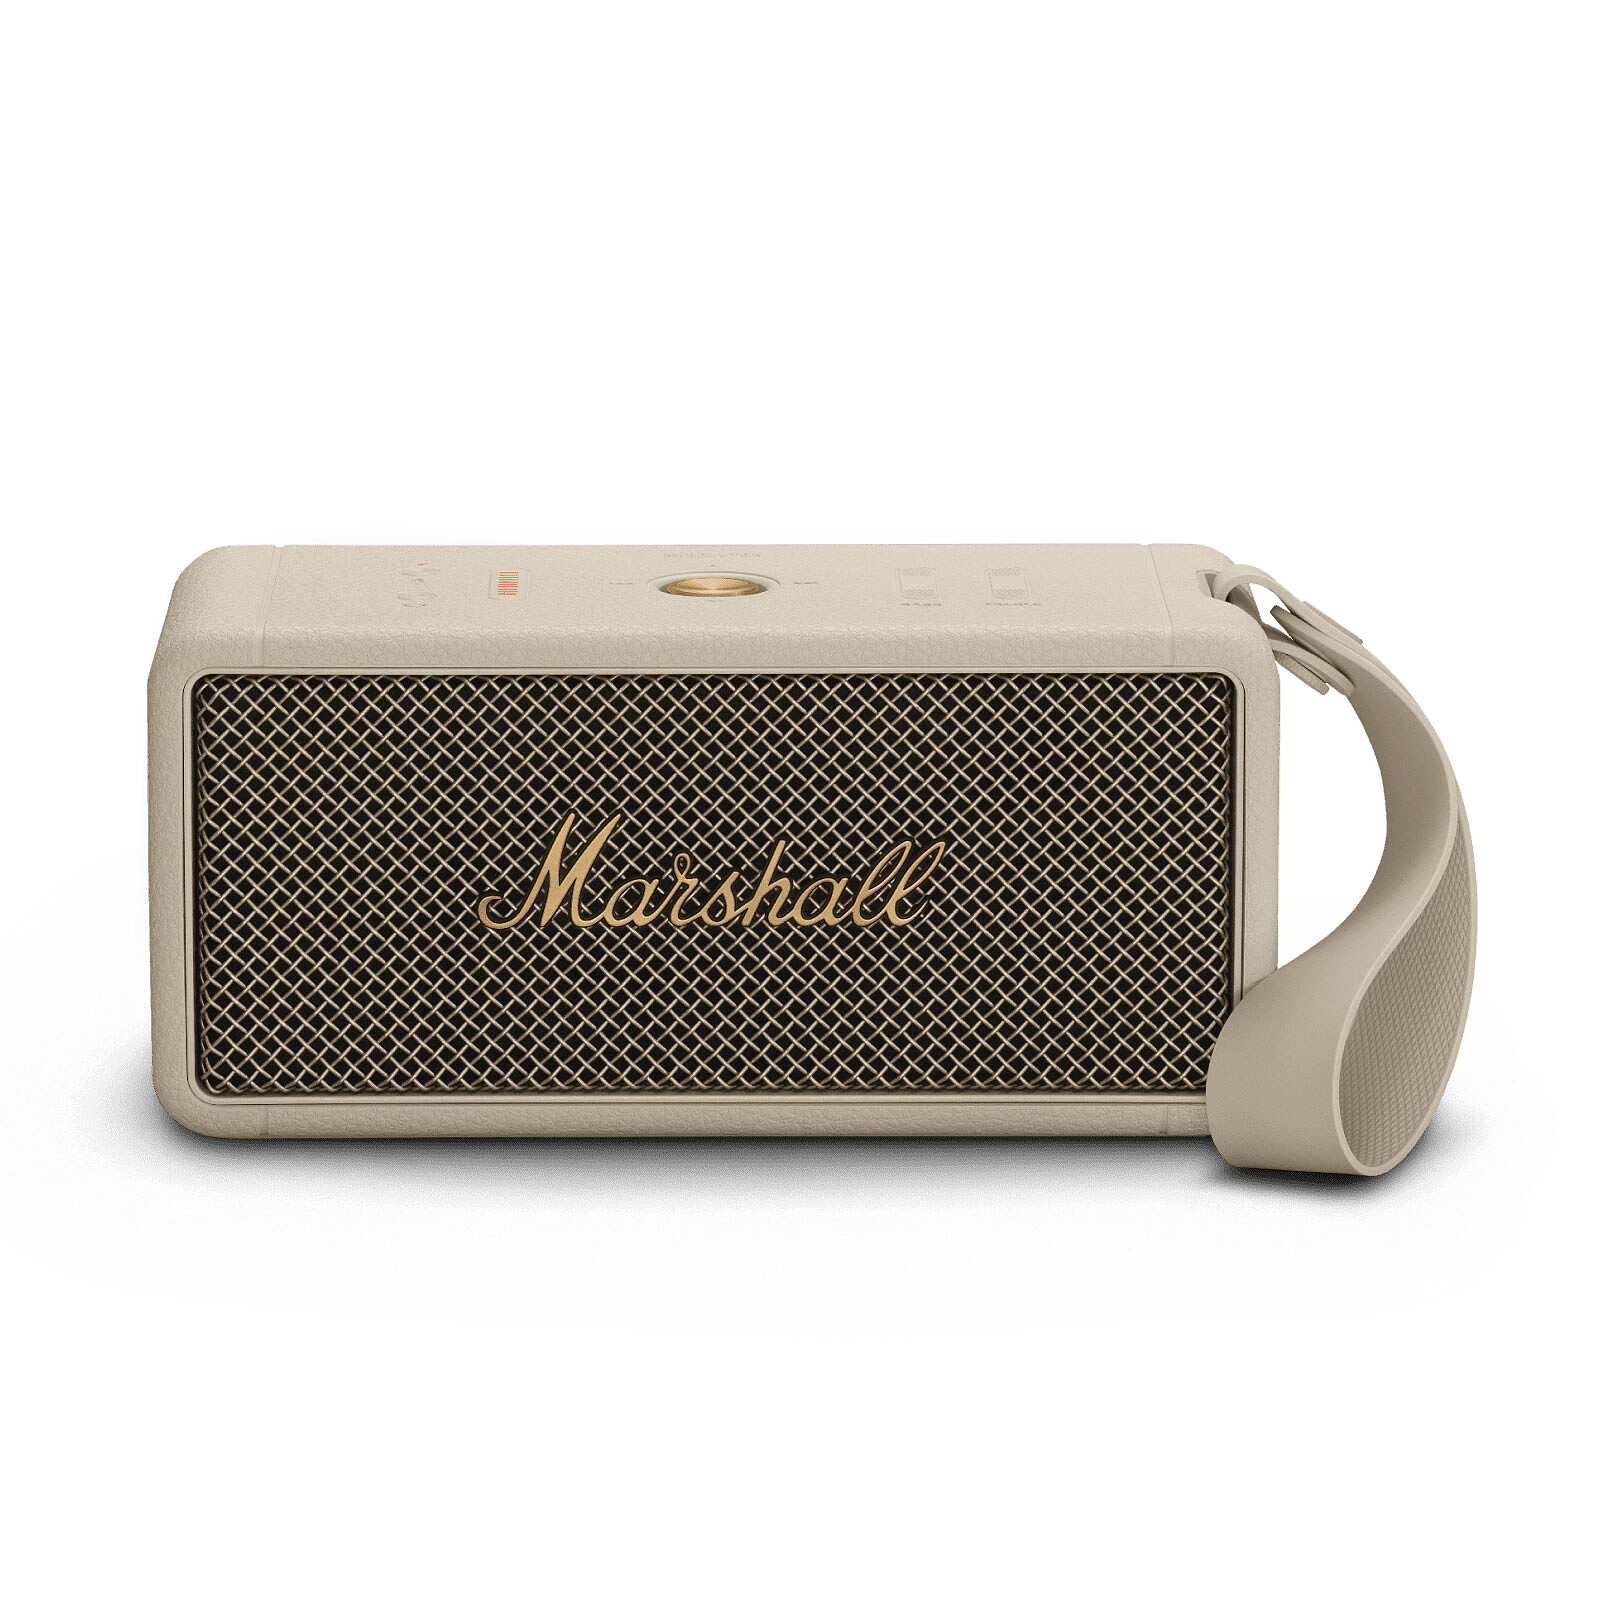 Opiniones sobre altavoces Marshall: calidad de sonido y diseño